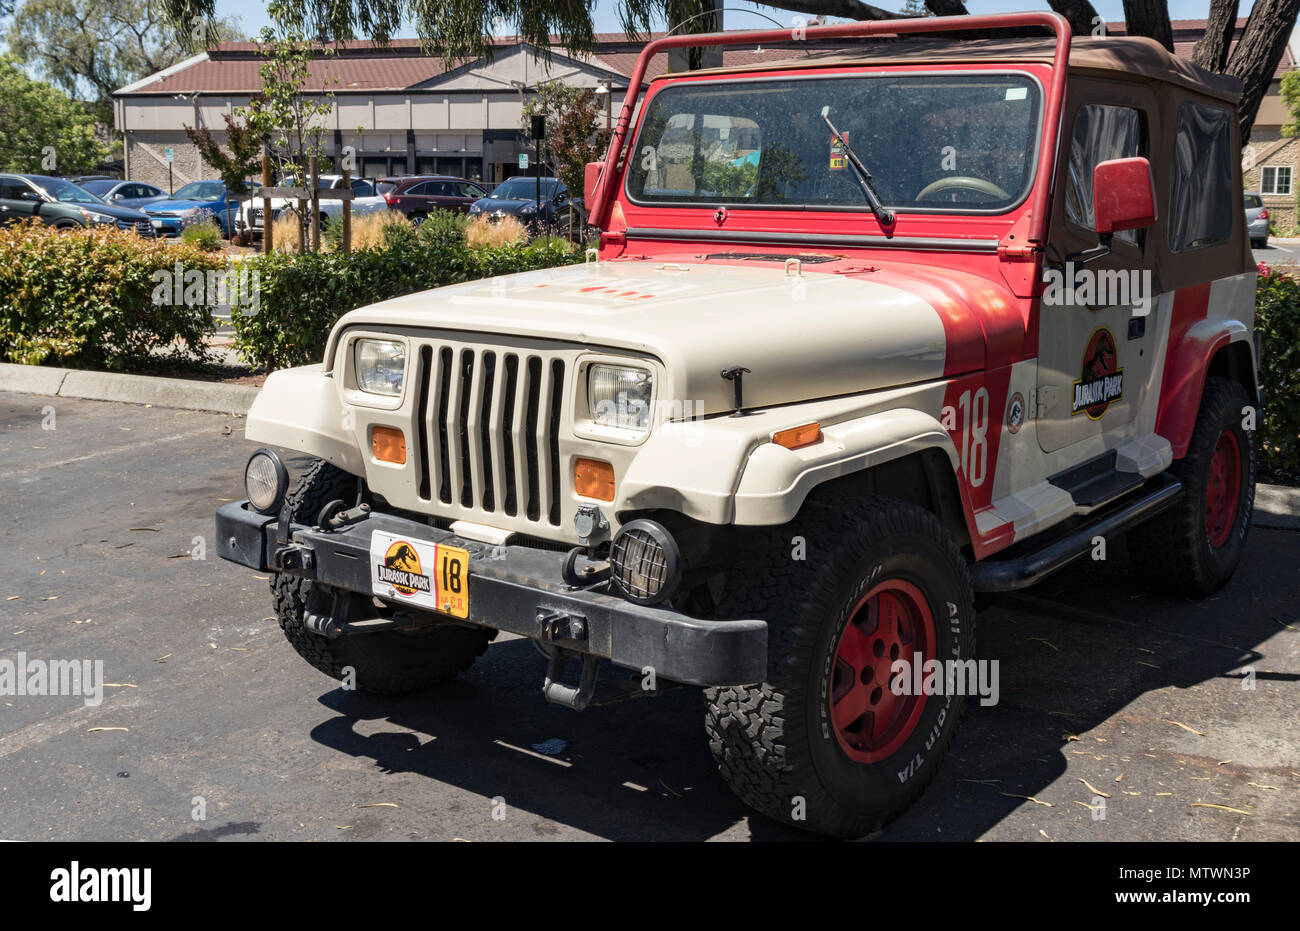 Campbell, California, EE.UU. - Mayo 28, 2018: el Parque Jurásico Jeep Wrangler número 18, como se ha visto en el Parque Jurásico y Jurásico franquicia cinematográfica mundial. Foto de stock